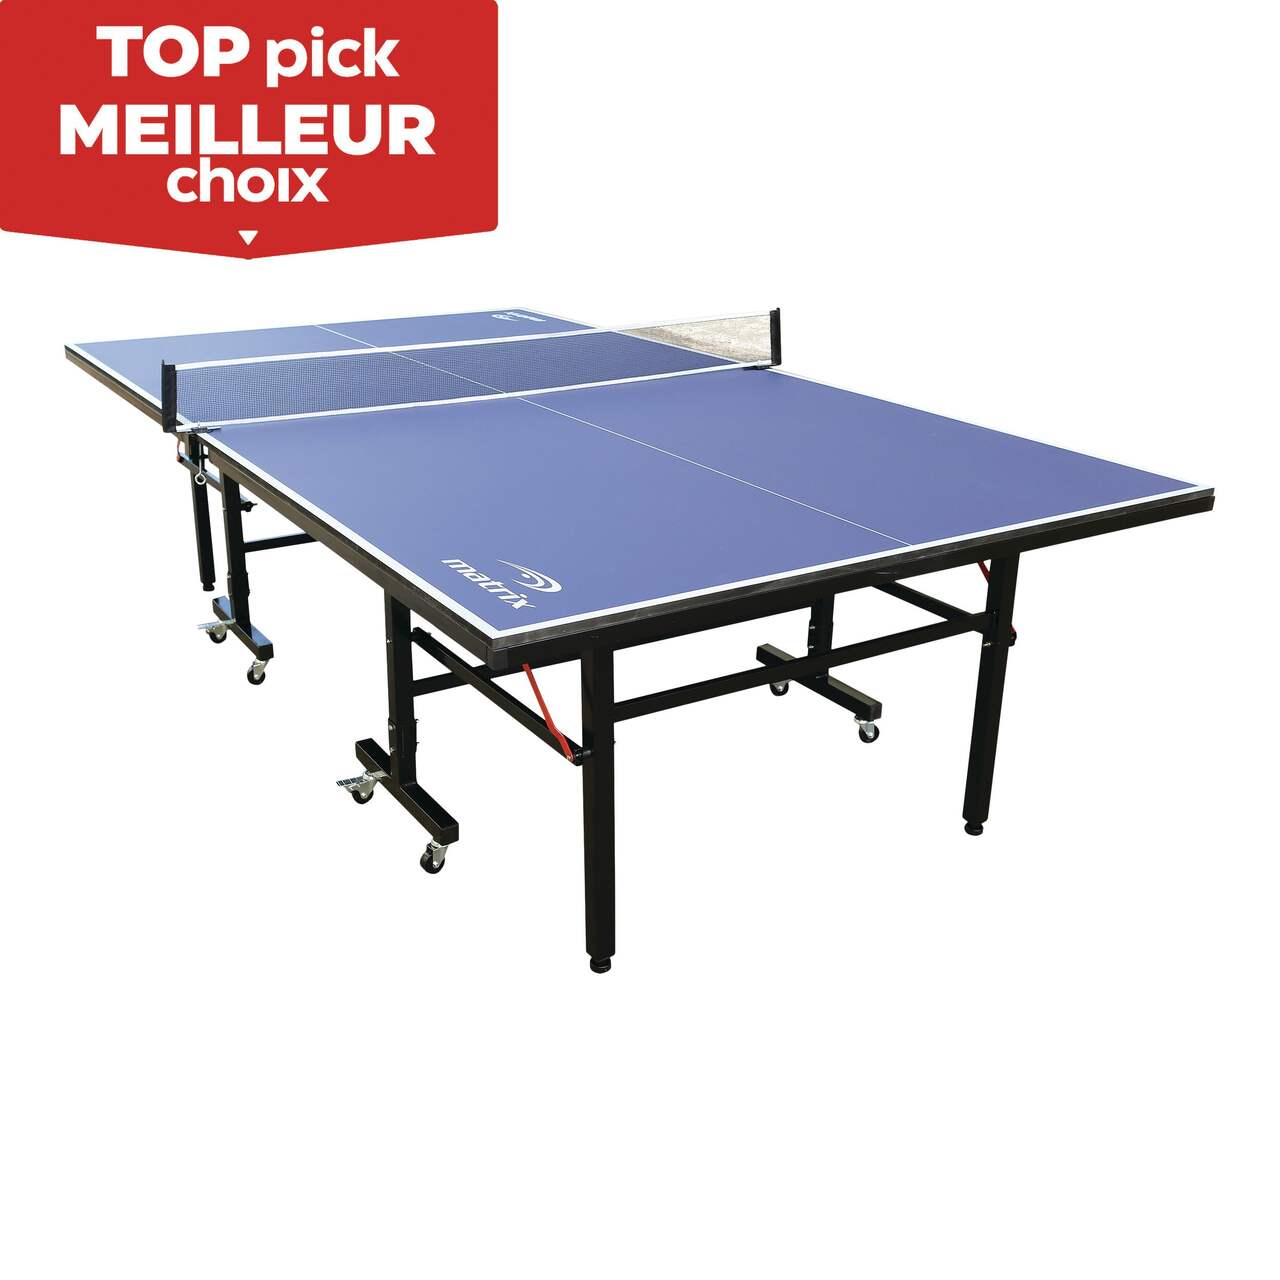 Table de ping pong indoor bleue - table pliable avec 2 raquettes et 3  balles, pour utilisation